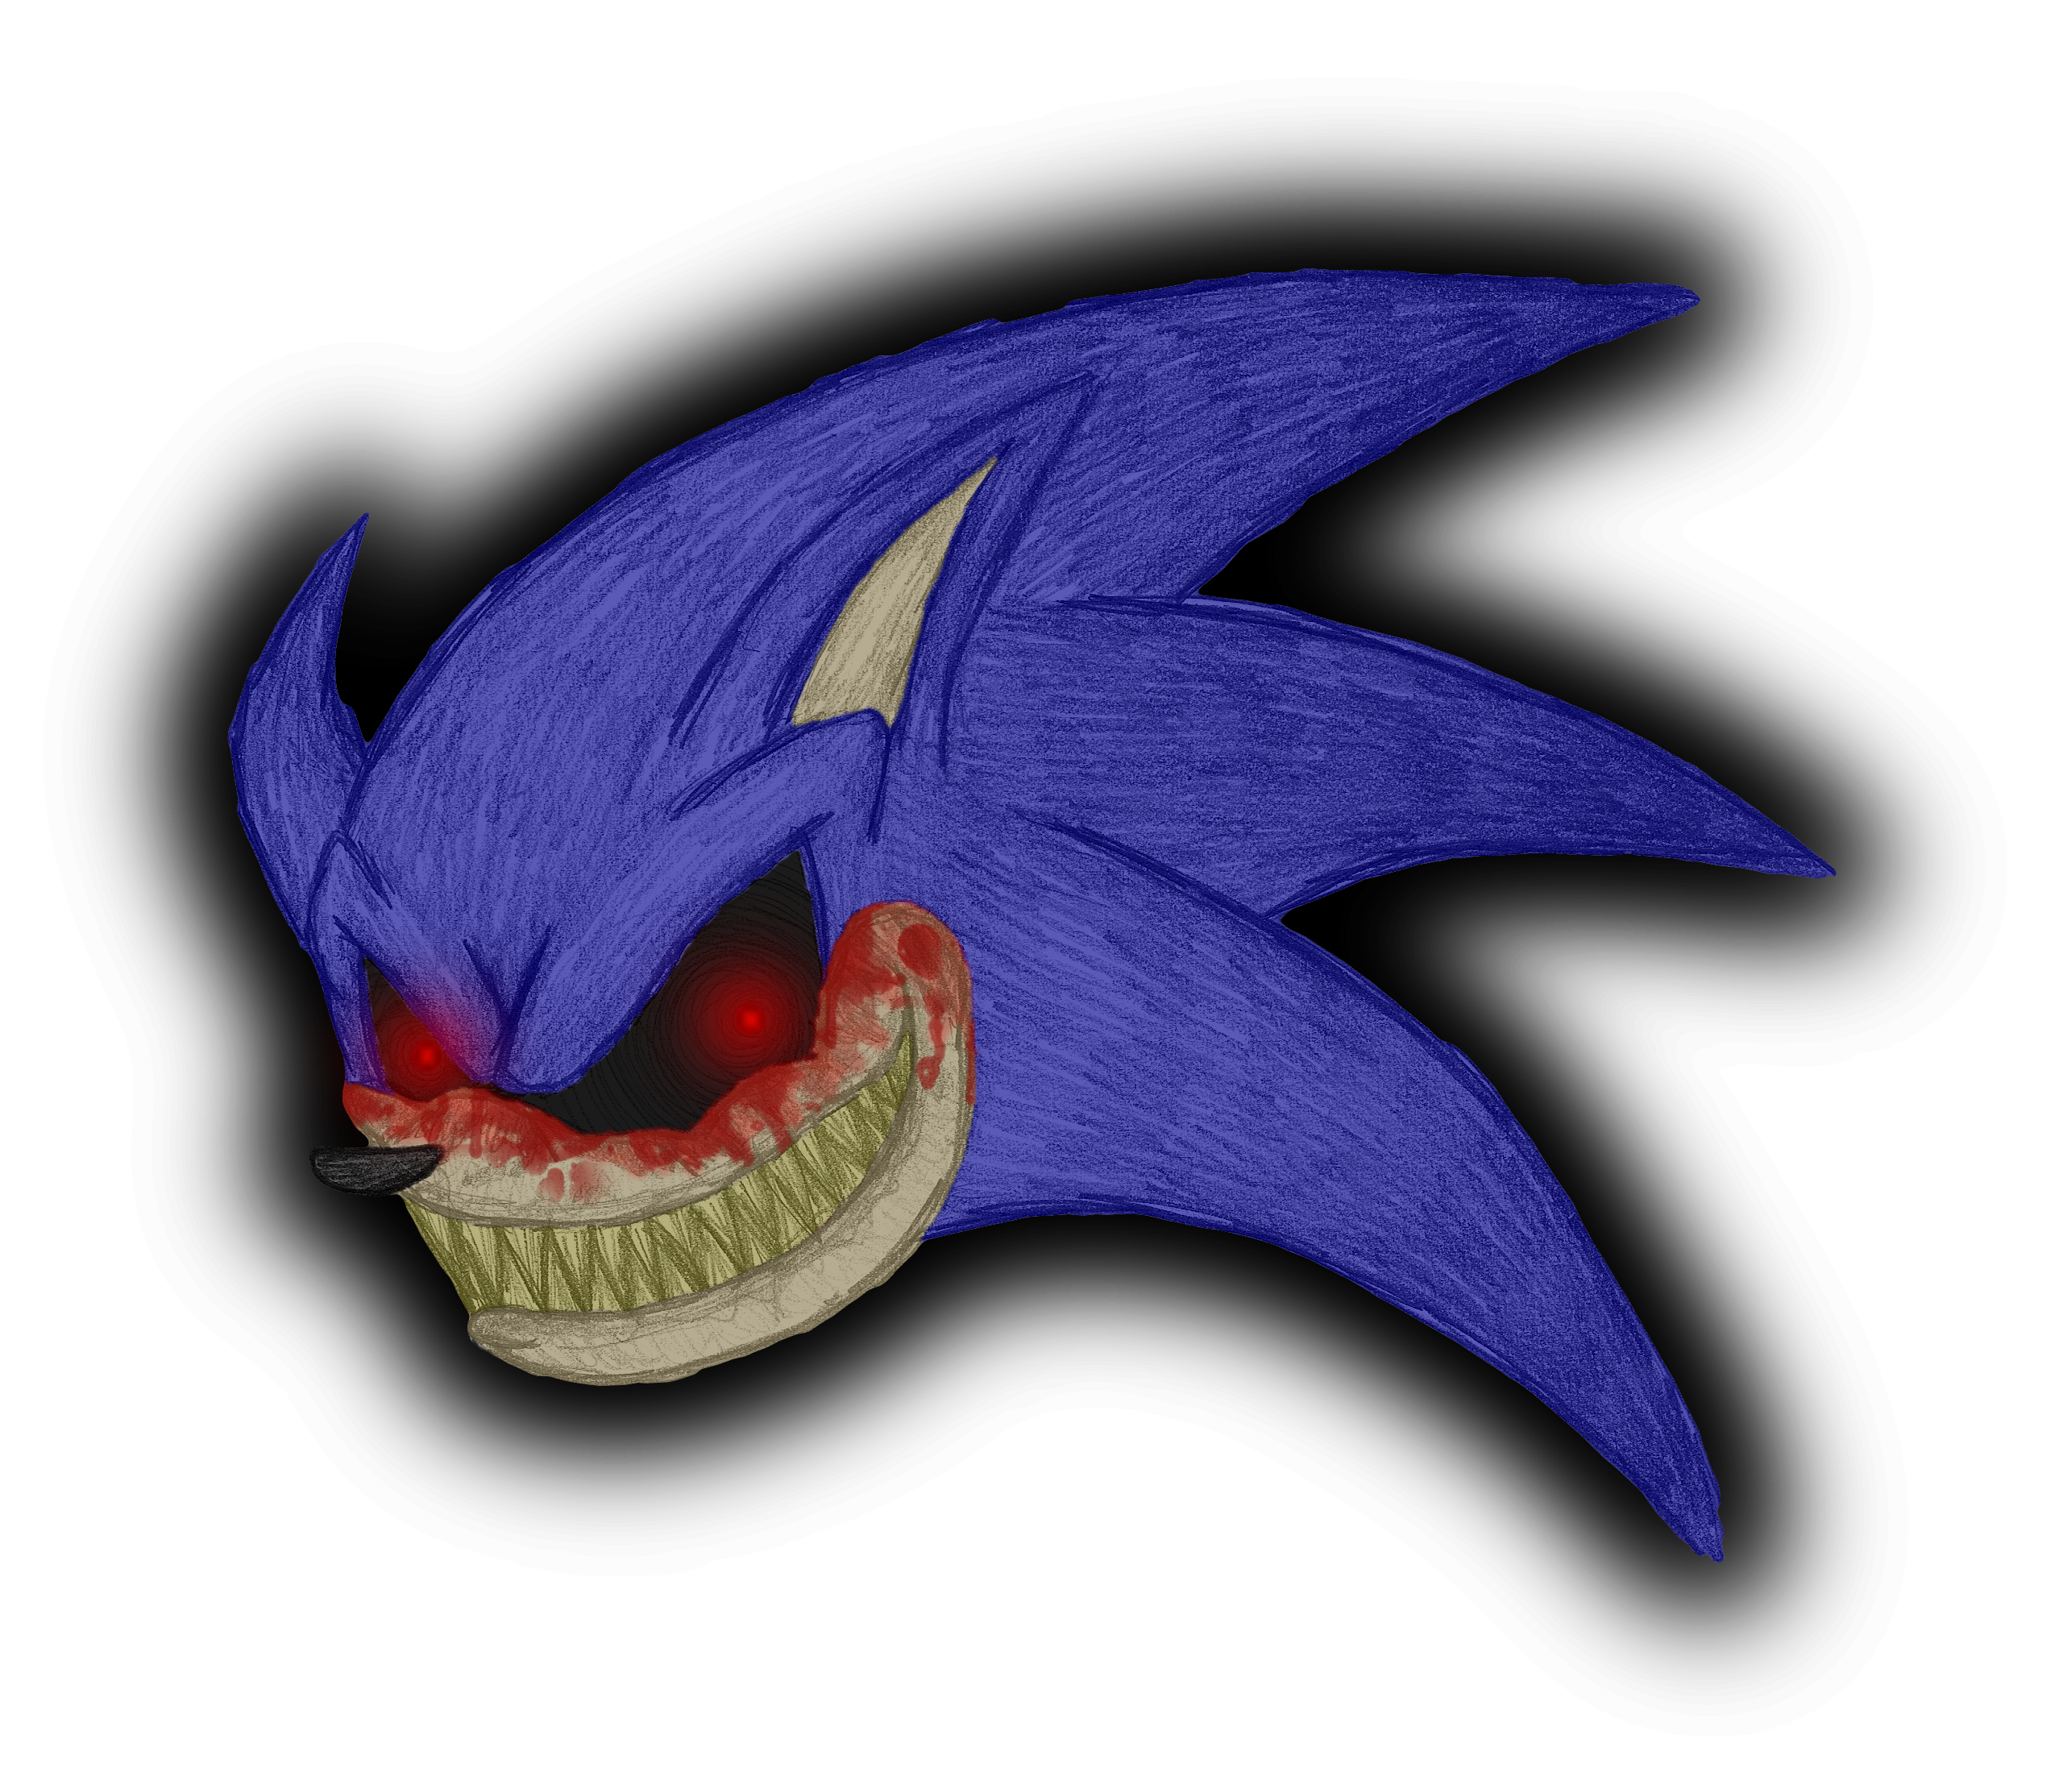 Darkspine Sonic V2.1 by Natakiro on DeviantArt